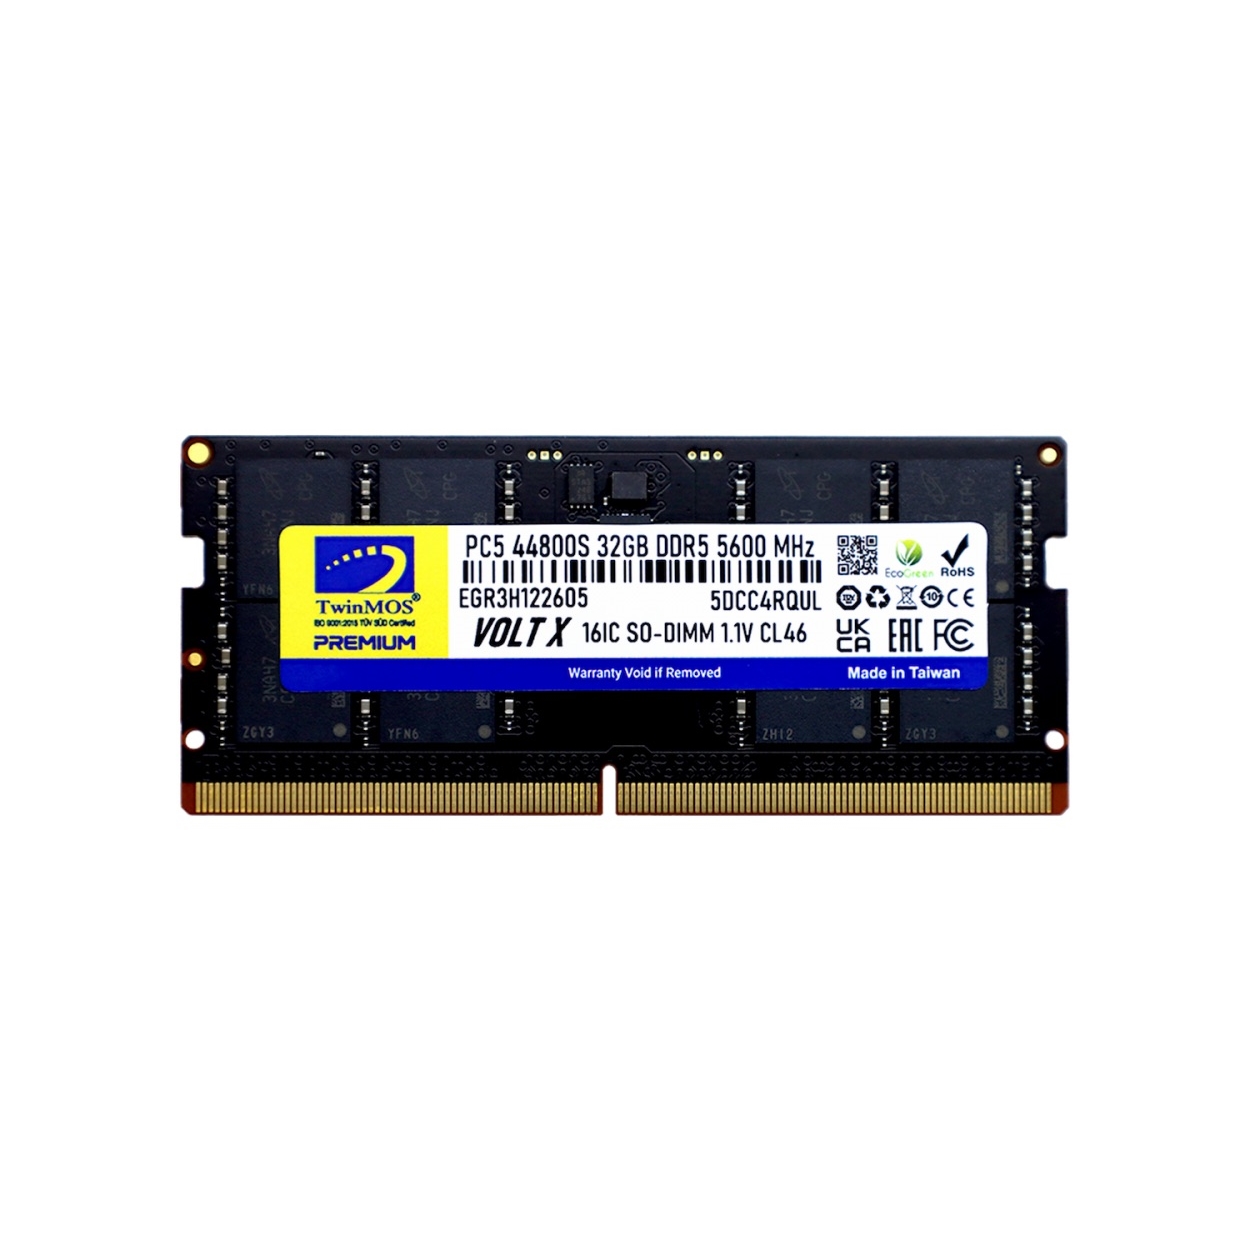 TWINMOS 32GB 5600MHz DDR5 TMD532GB5600S46 NOTEBOOK RAM